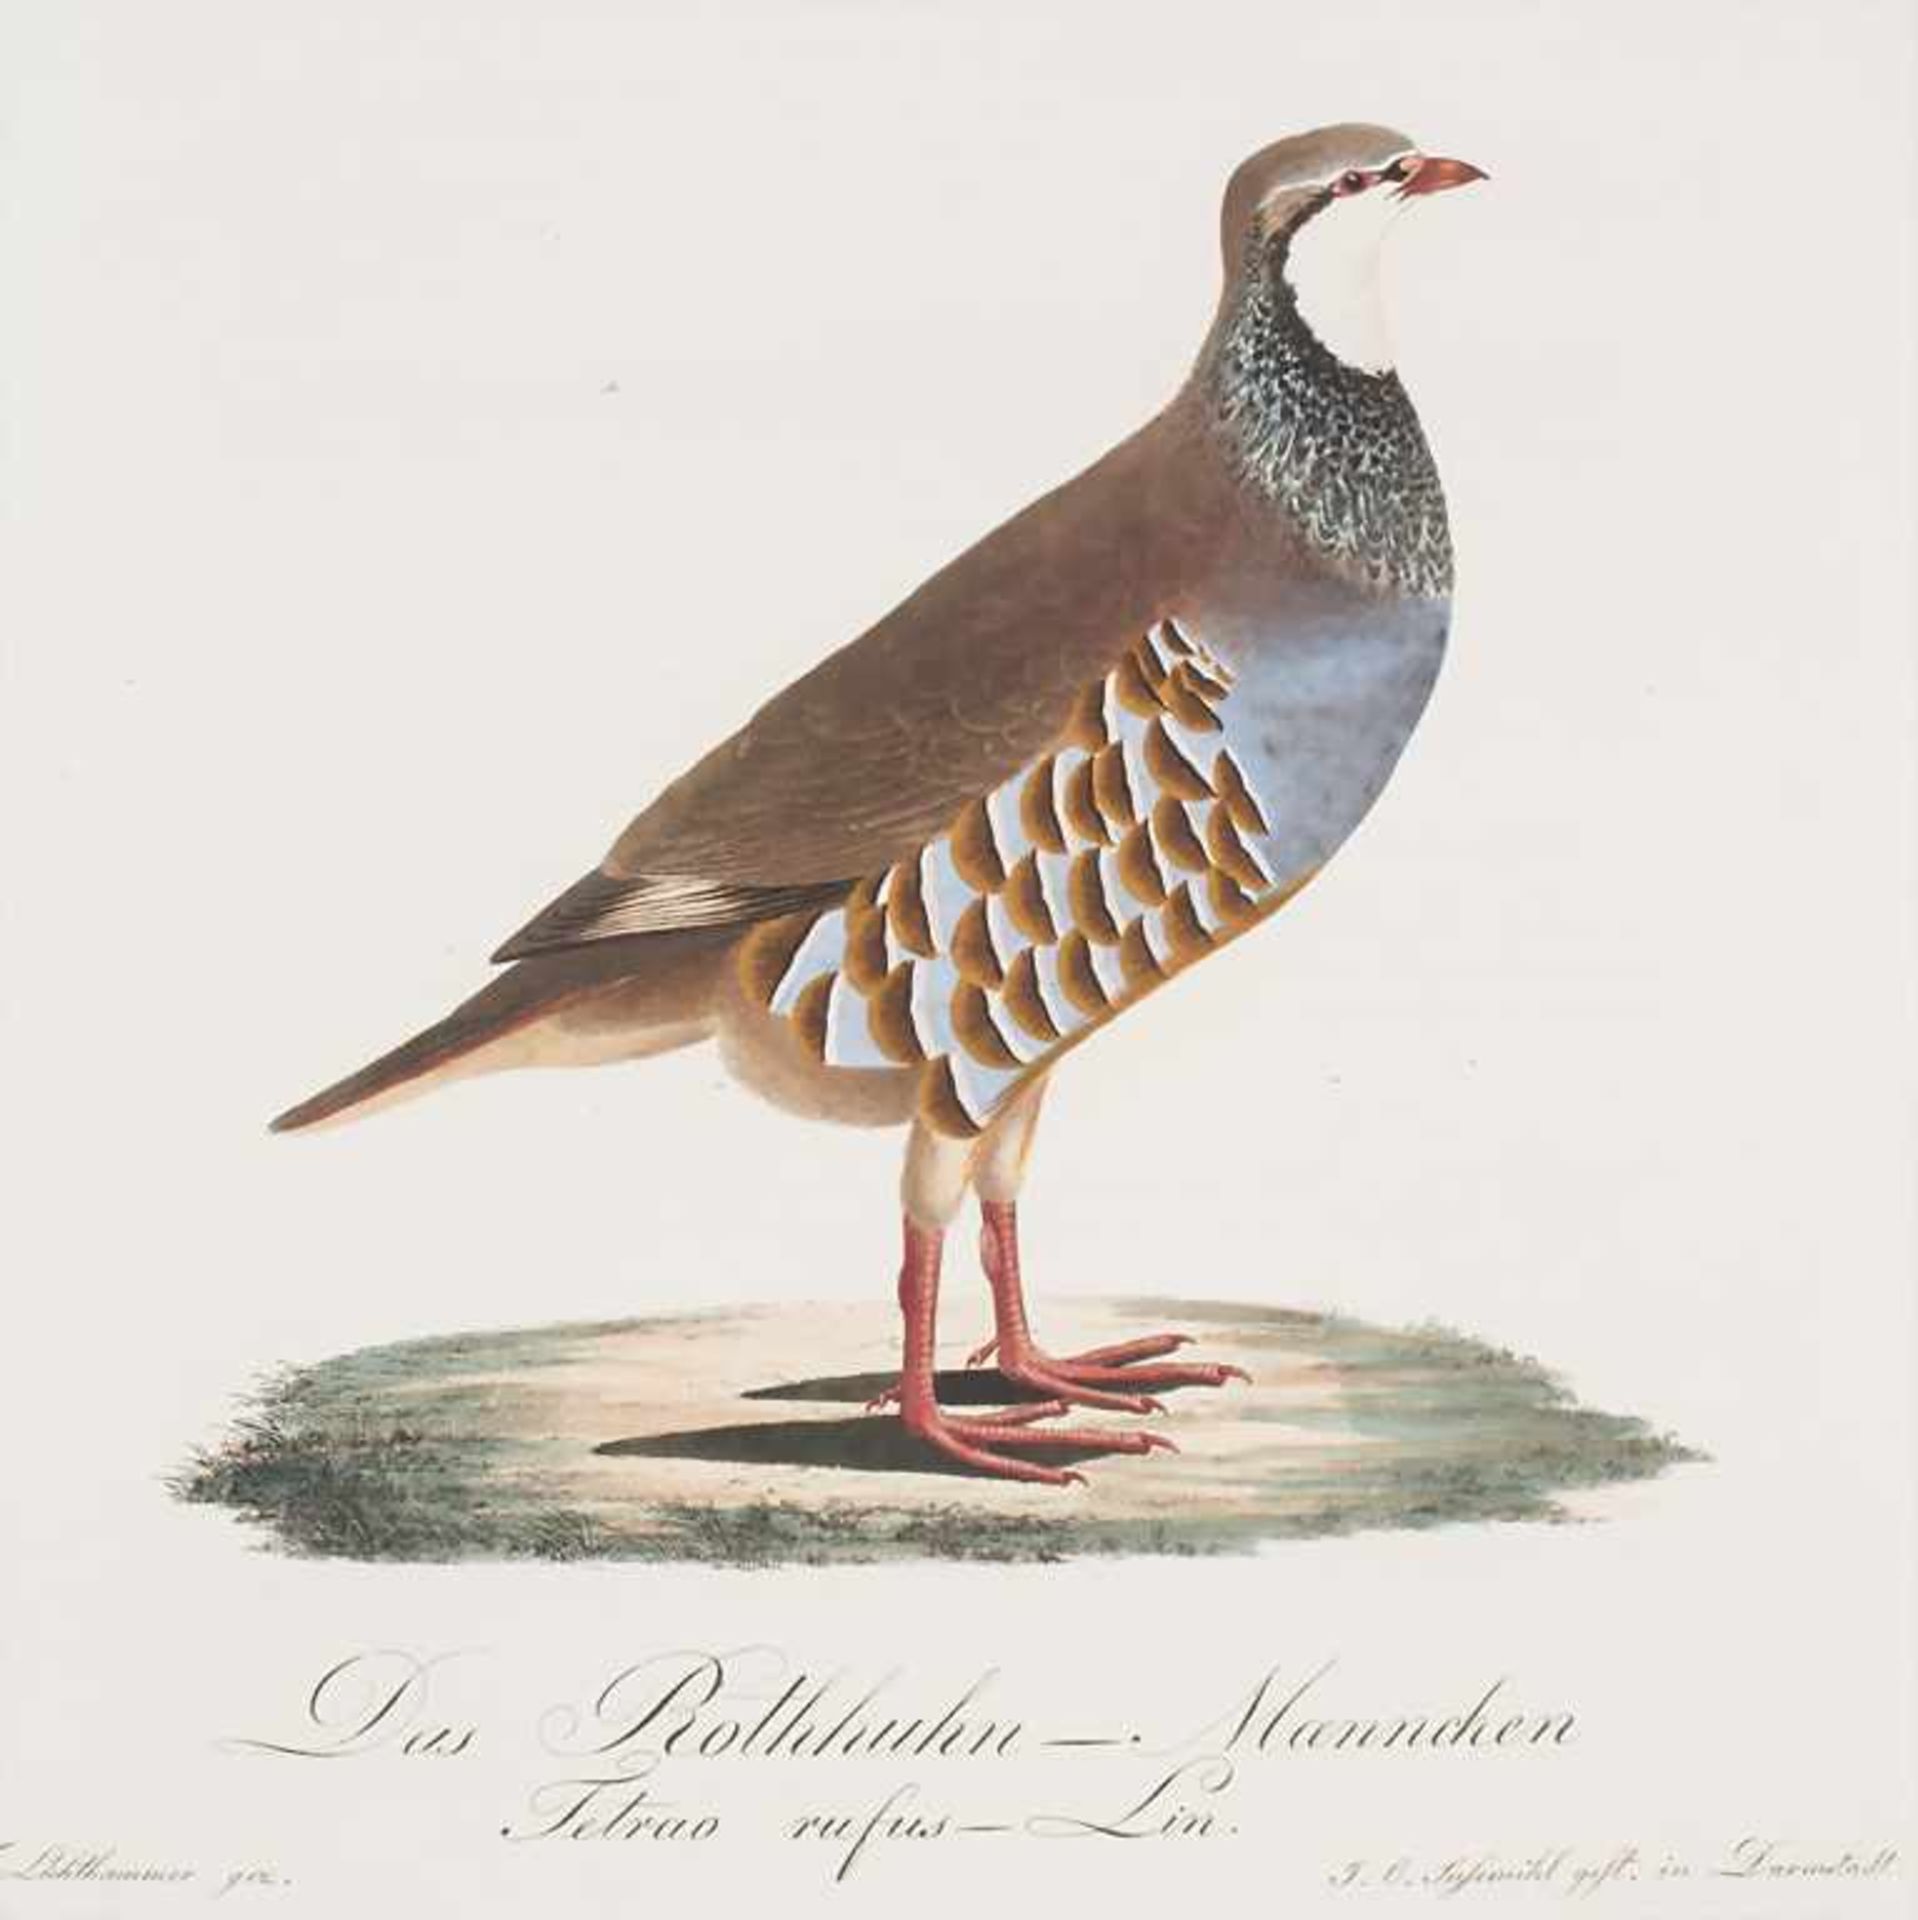 J.C. Susemihl (1767-nach 1848), 'Teutsche Ornithologie oder Naturgeschichte aller VögelTechnik: 20 - Image 9 of 17